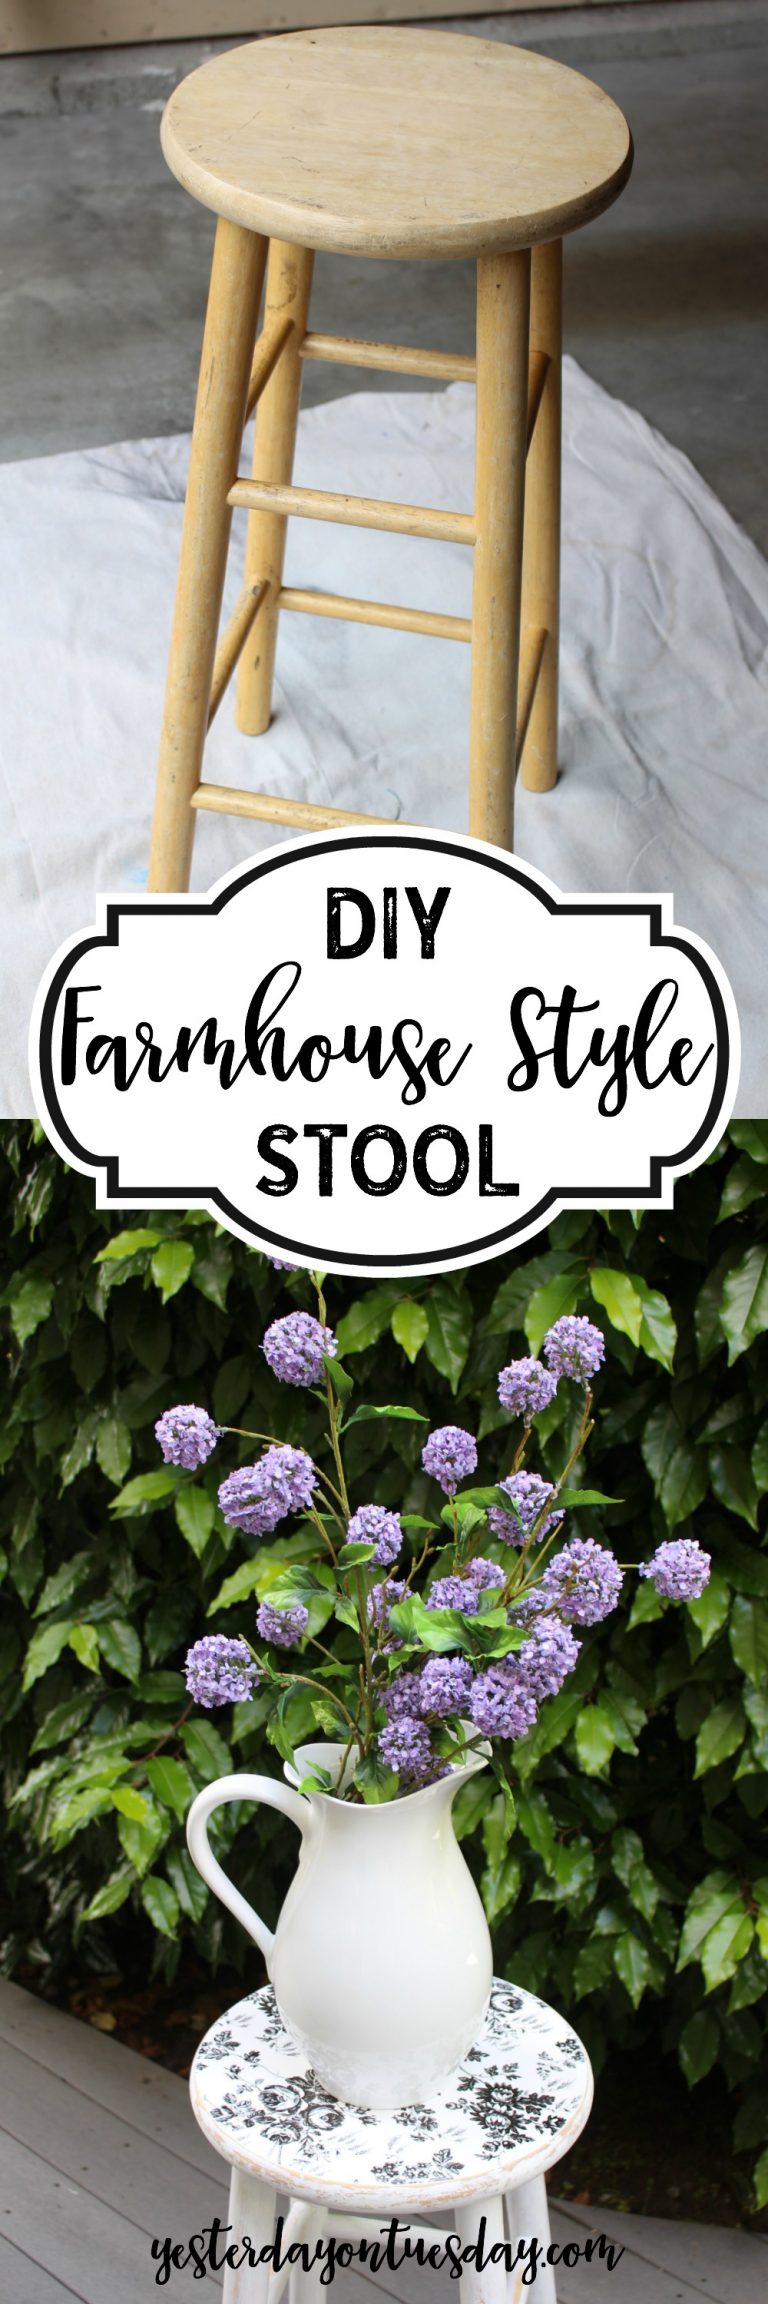 DIY Farmhouse Stool